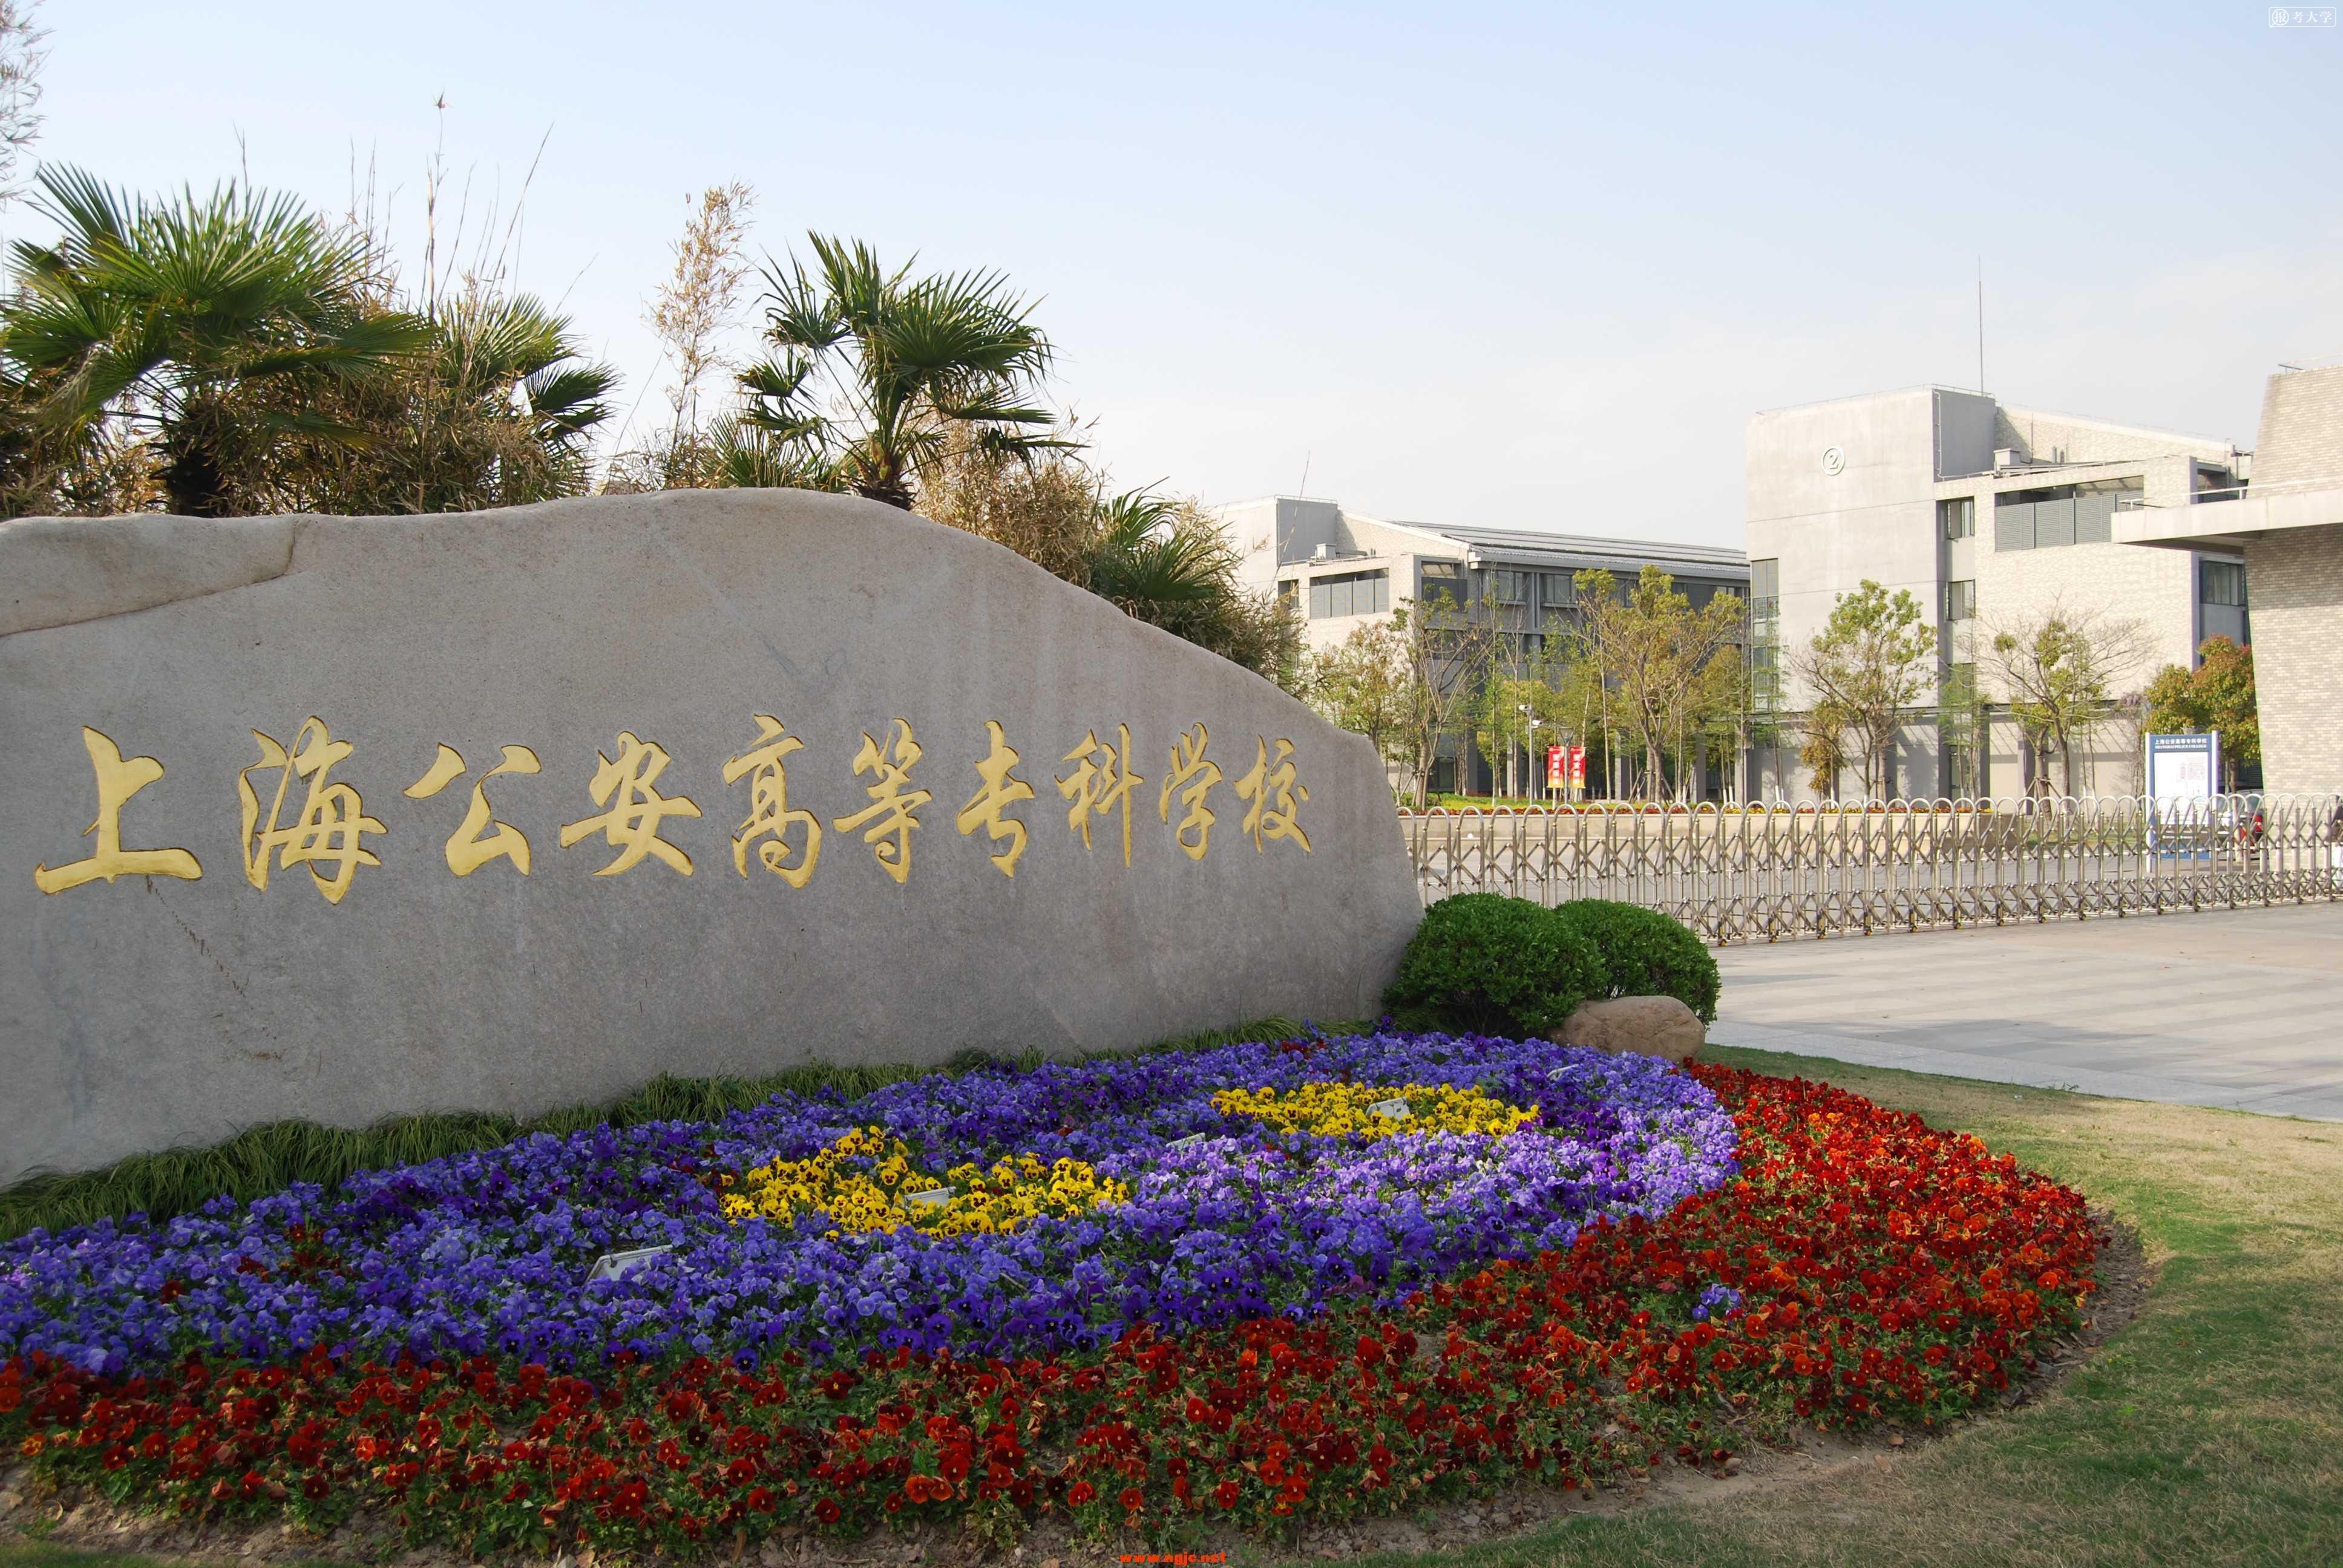 上海公安学院校园风光图片